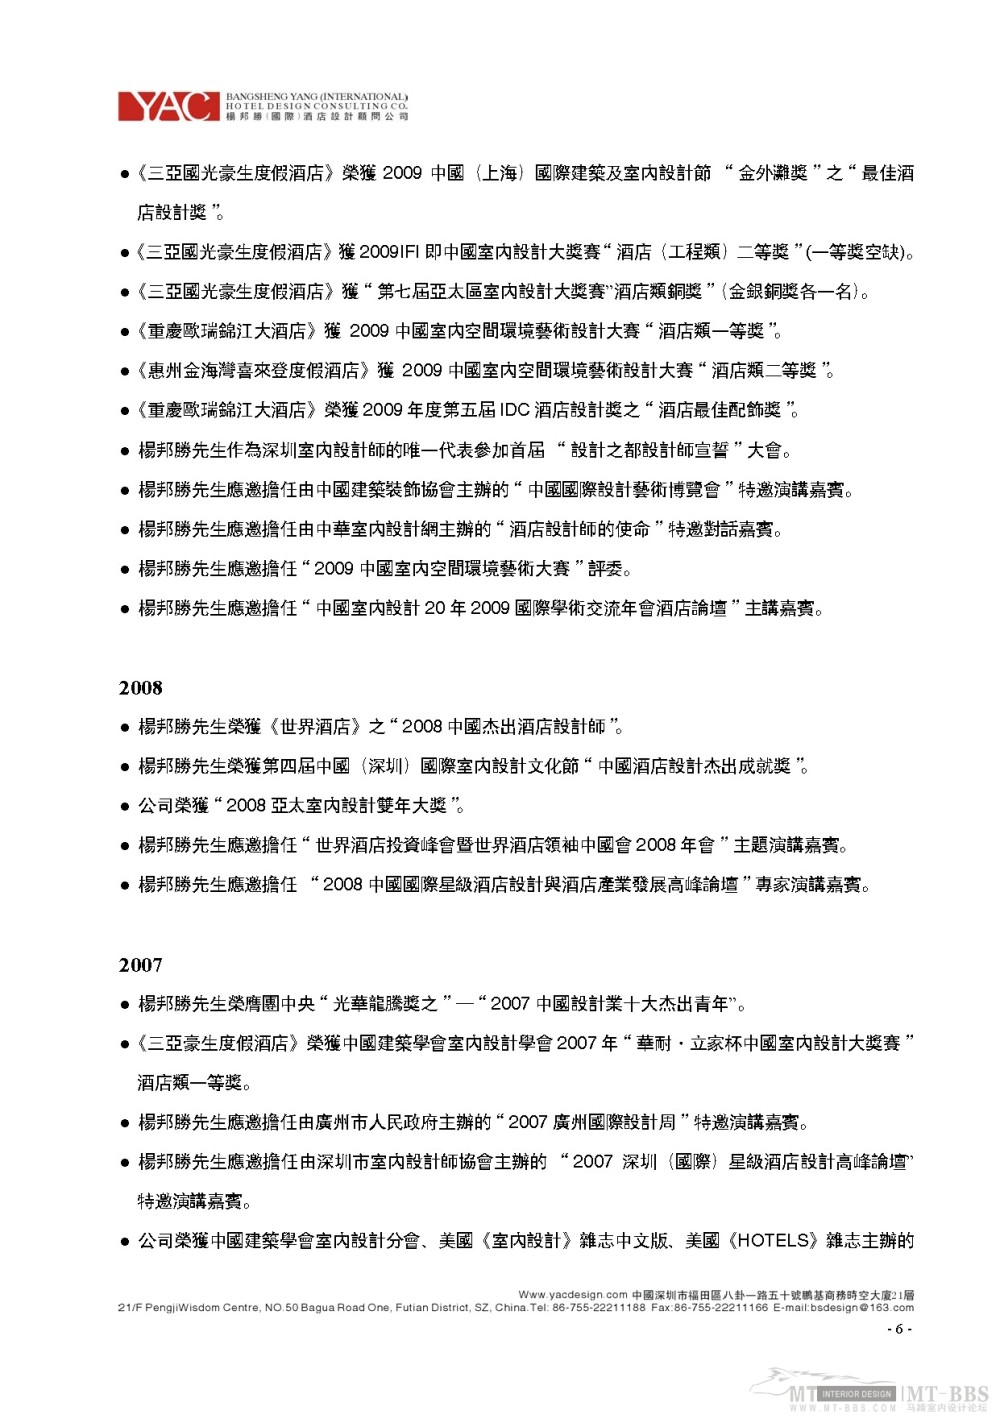 杨邦胜_2011.03.30YAC（国际）杨邦胜酒店设计顾问公司简介_页面_06.jpg